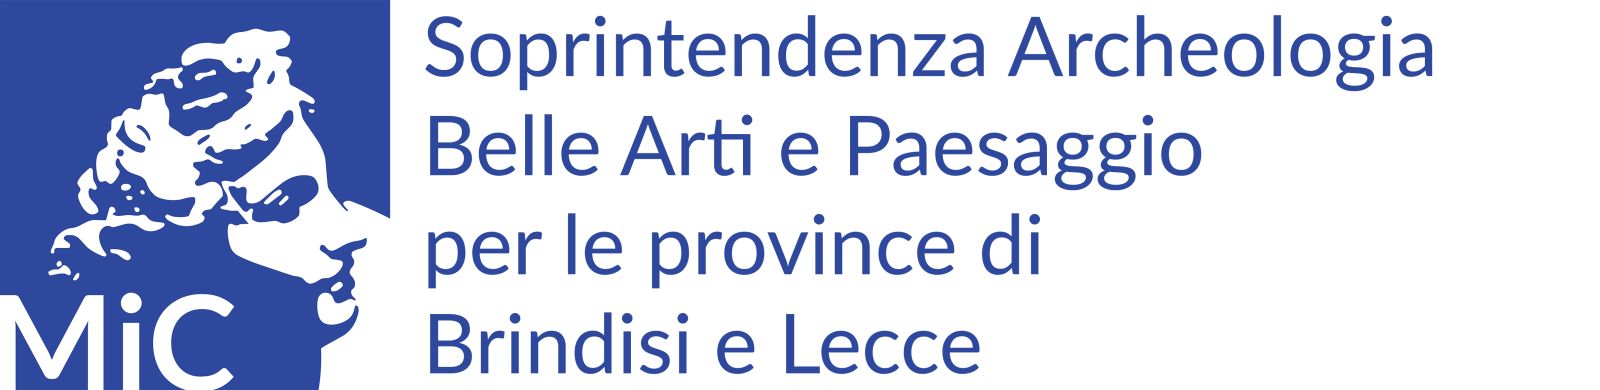 Logo Soprintendenza archeologia belle arti e paesaggio per le province di Brindisi e Lecce